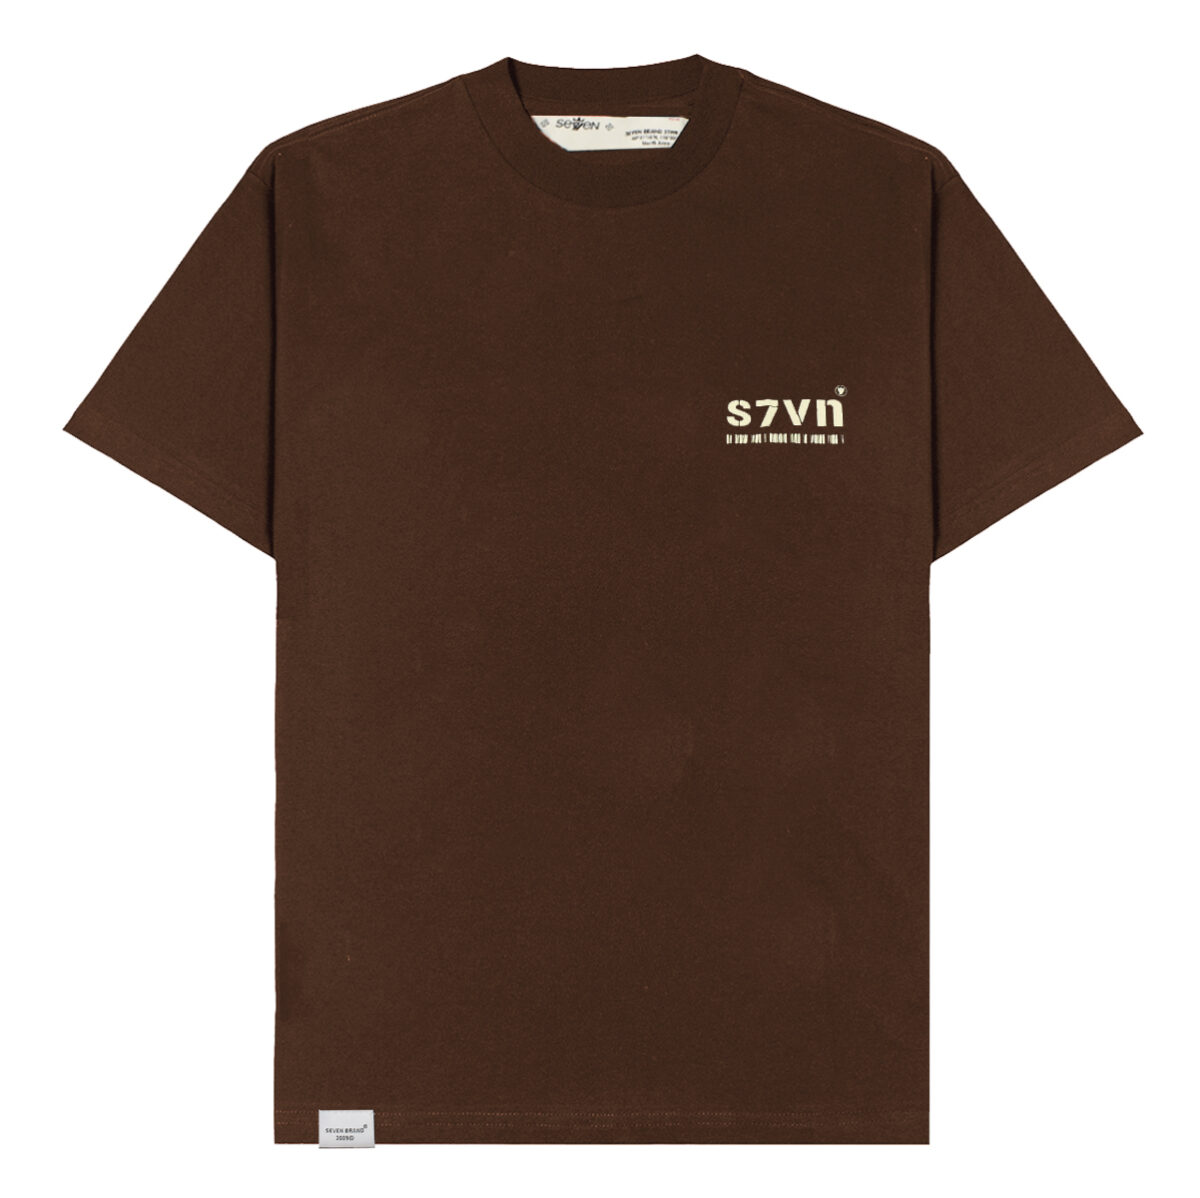 Camiseta Seven Oversized S7VN (Brown)